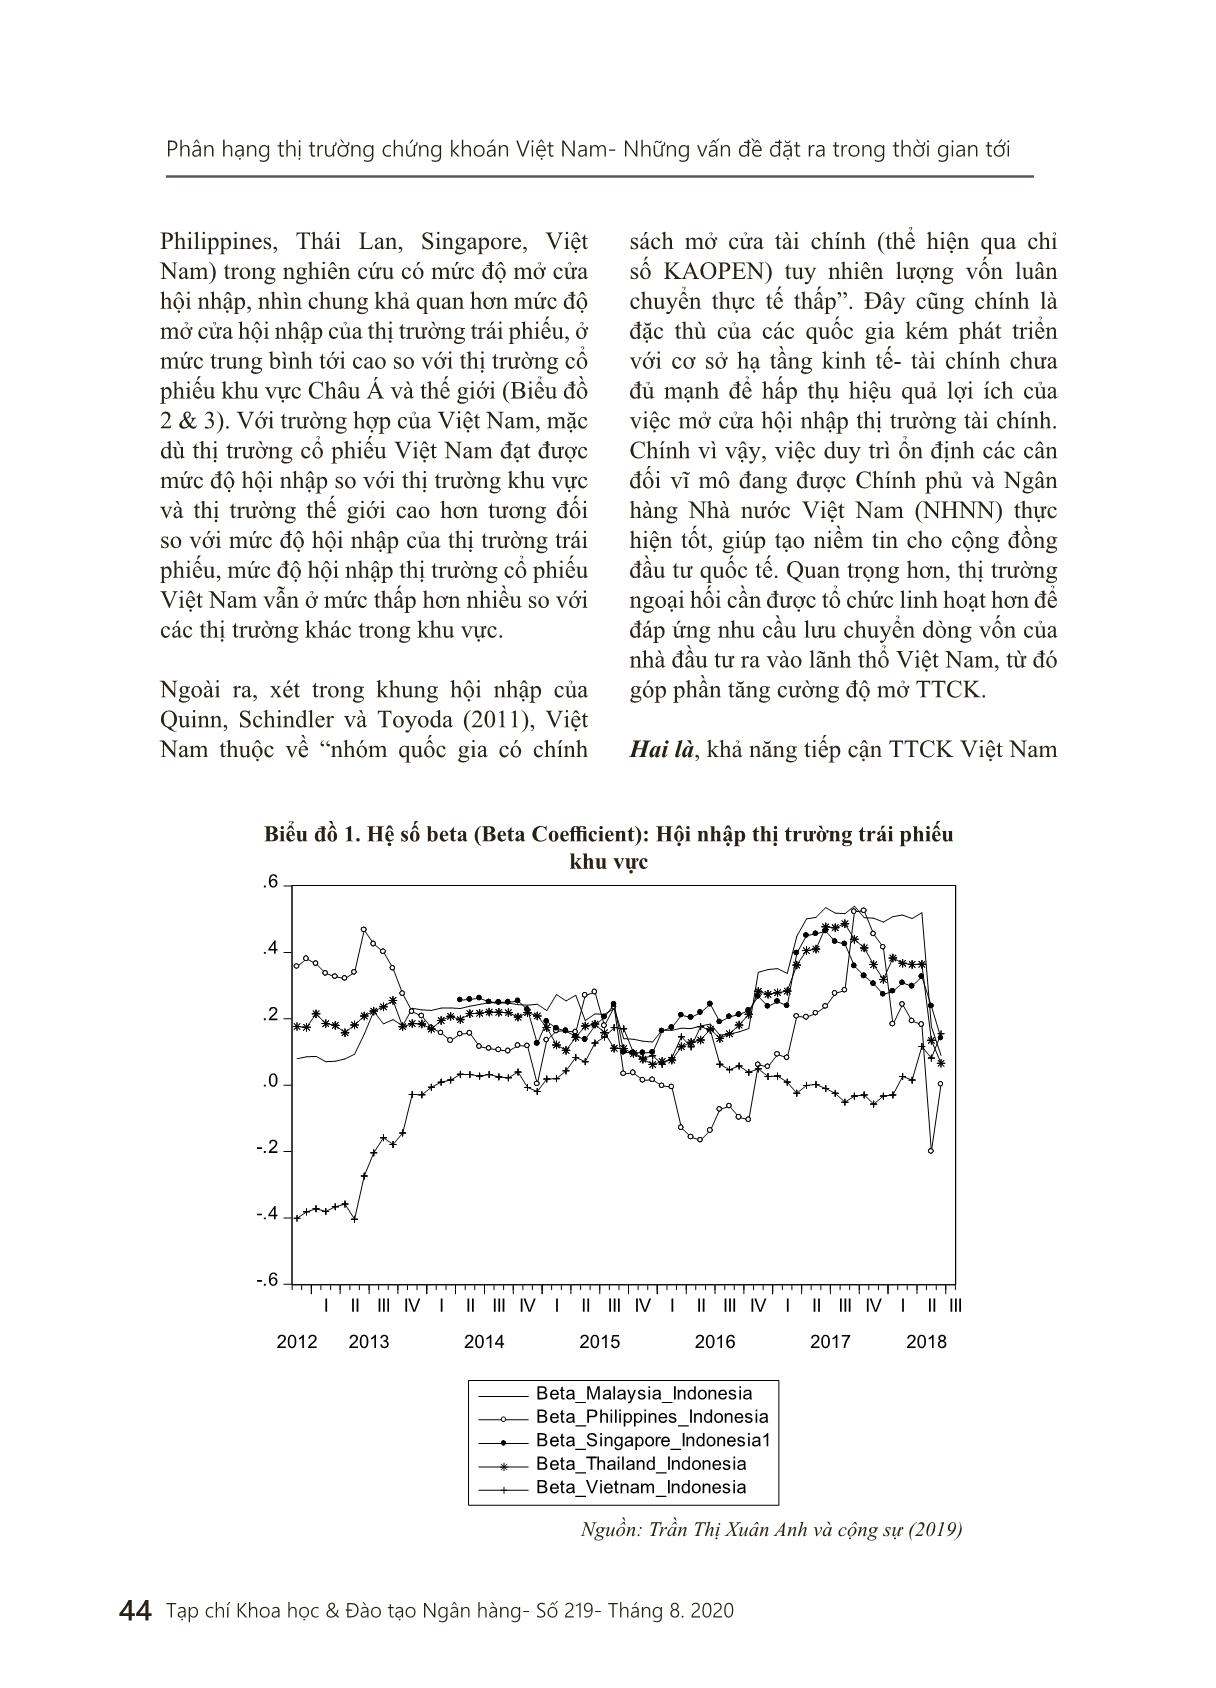 Phân hạng thị trường chứng khoán Việt Nam - Những vấn đề đặt ra trong thời gian tới trang 9